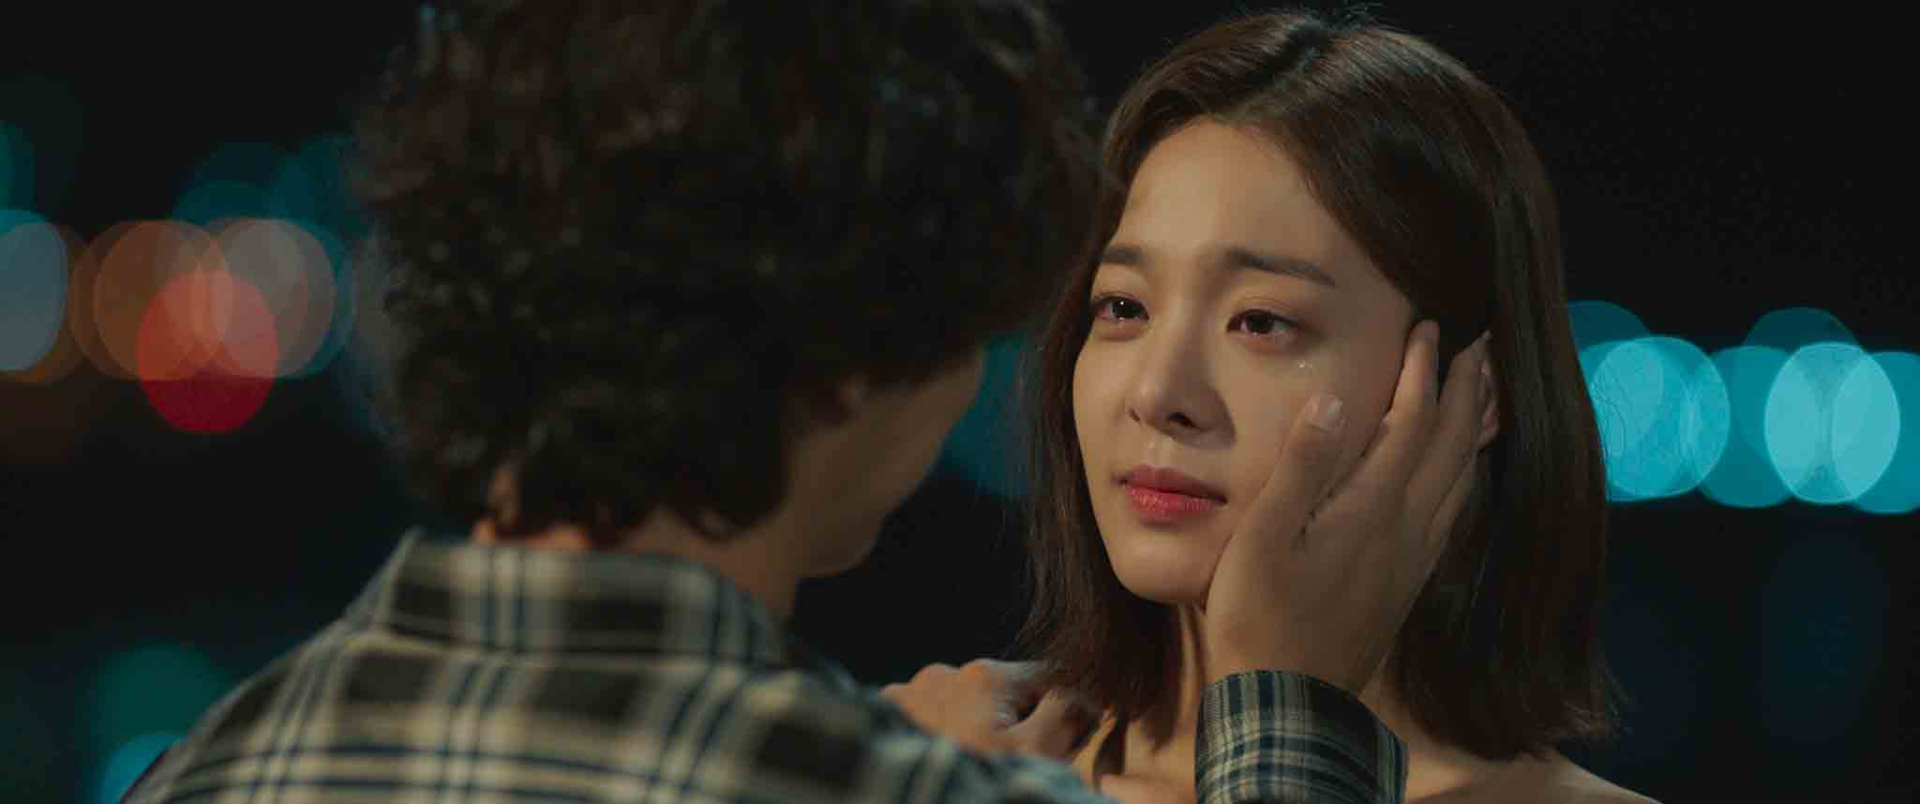 Nhân vật nữ chính Ara (diễn viên Seol In-ah thủ vai) là một nàng thơ xinh đẹp say đắm mùi hương của tình yêu.